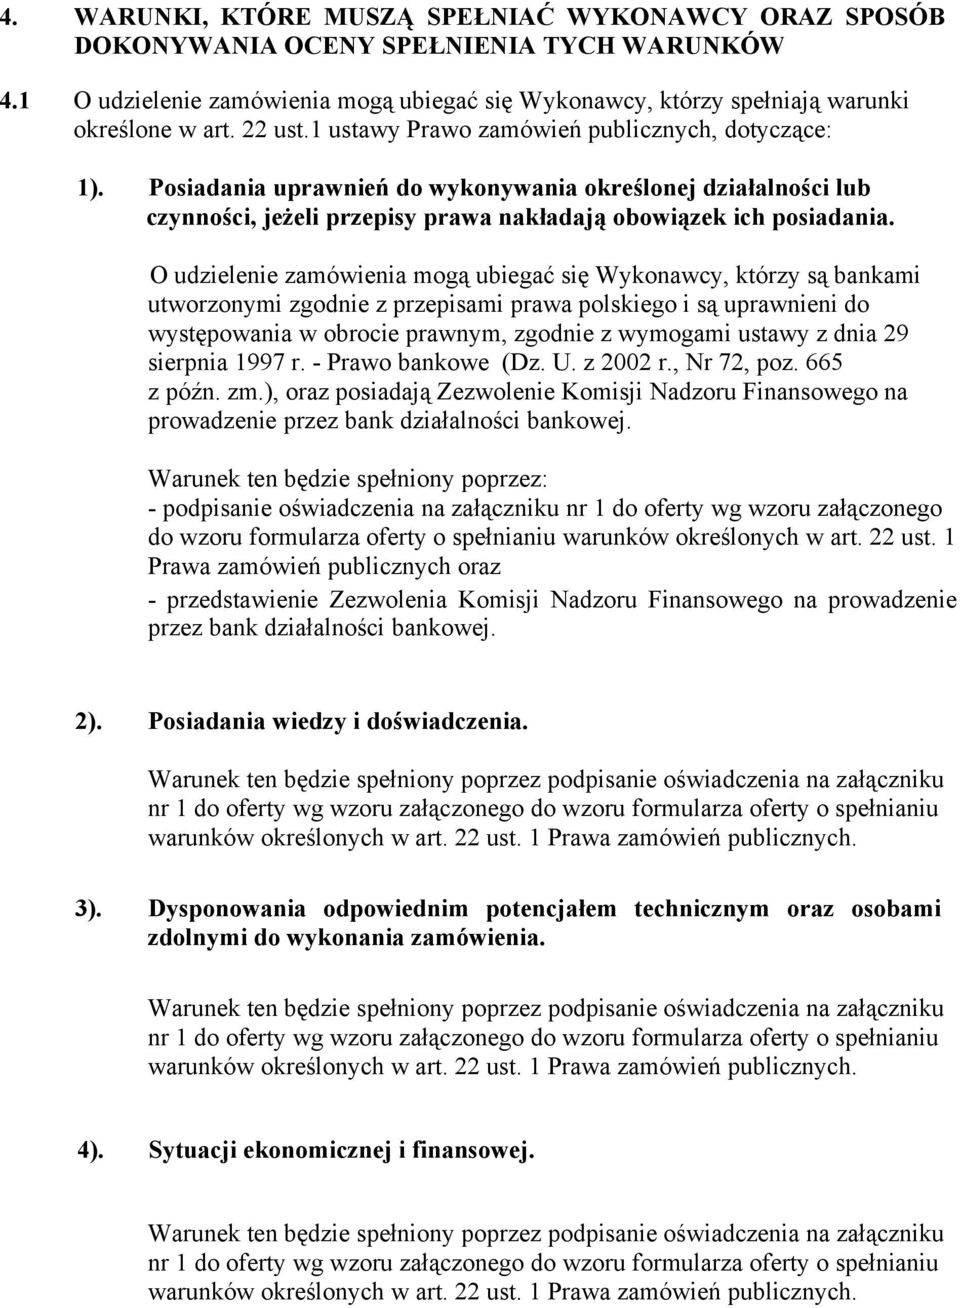 O udzielenie zamówienia mogą ubiegać się Wykonawcy, którzy są bankami utworzonymi zgodnie z przepisami prawa polskiego i są uprawnieni do występowania w obrocie prawnym, zgodnie z wymogami ustawy z